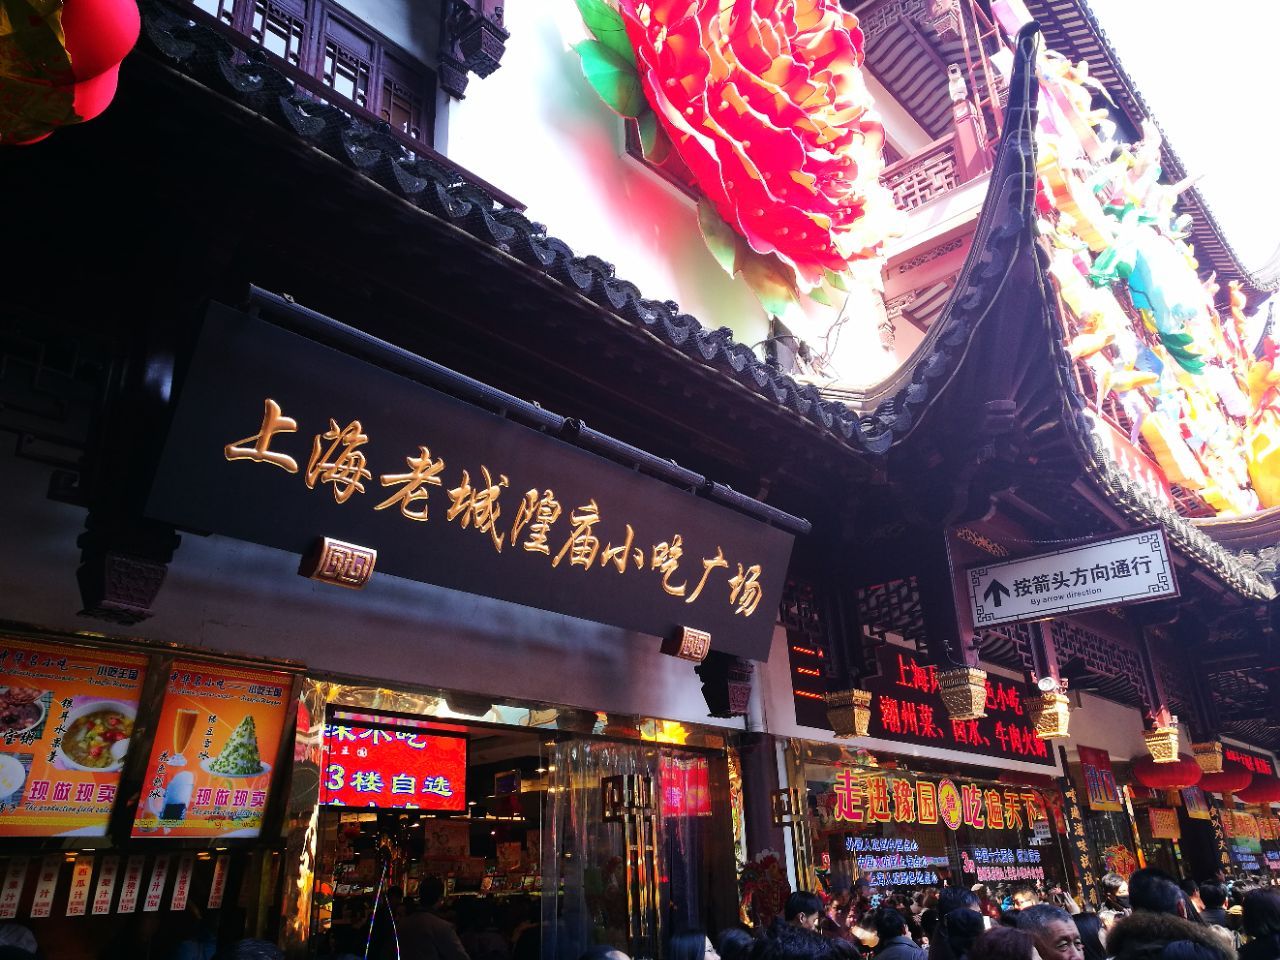 【携程攻略】上海上海城隍庙道观景点,十几年前去过一回,今非昔比